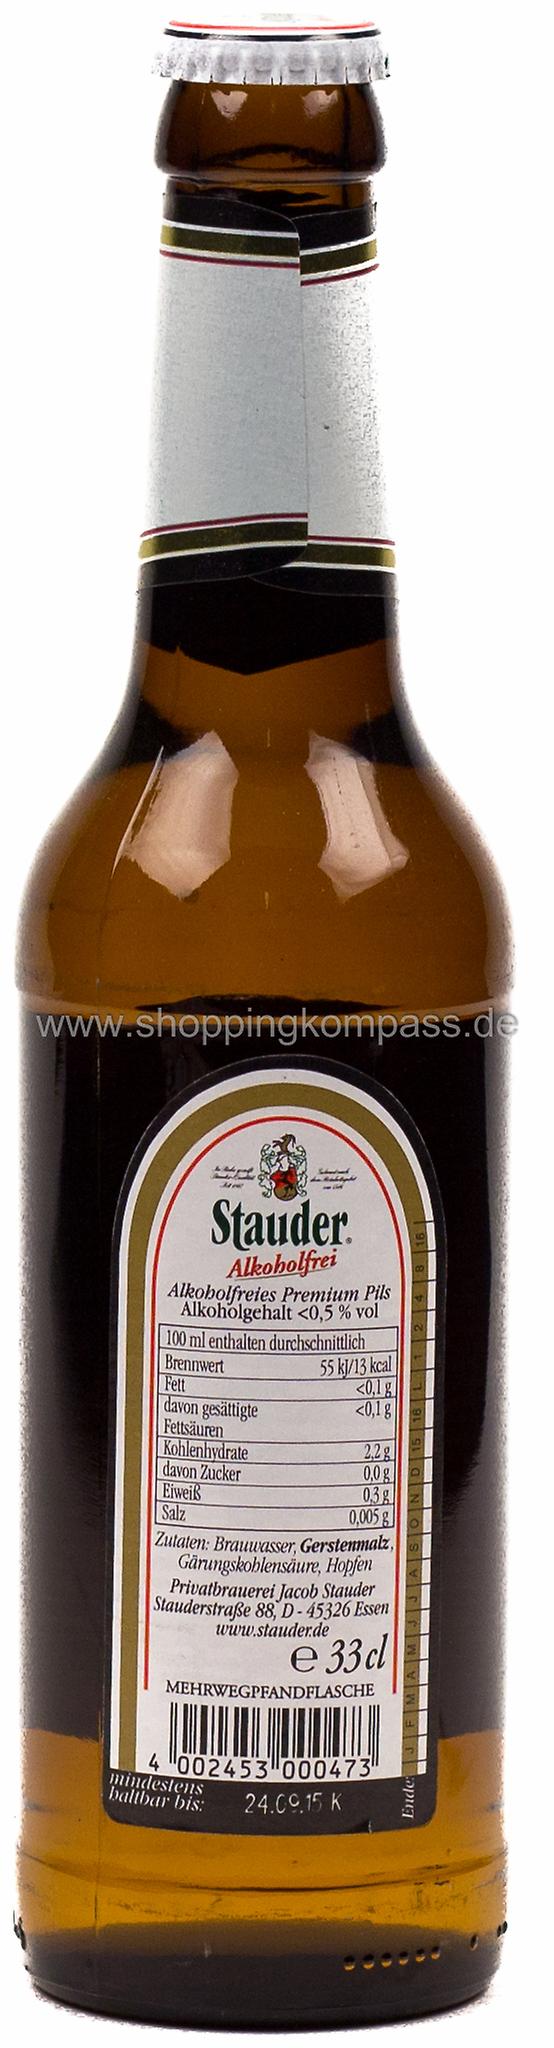 Stauder Pils alkoholfrei 6 x 0,33 l Glas Mehrweg